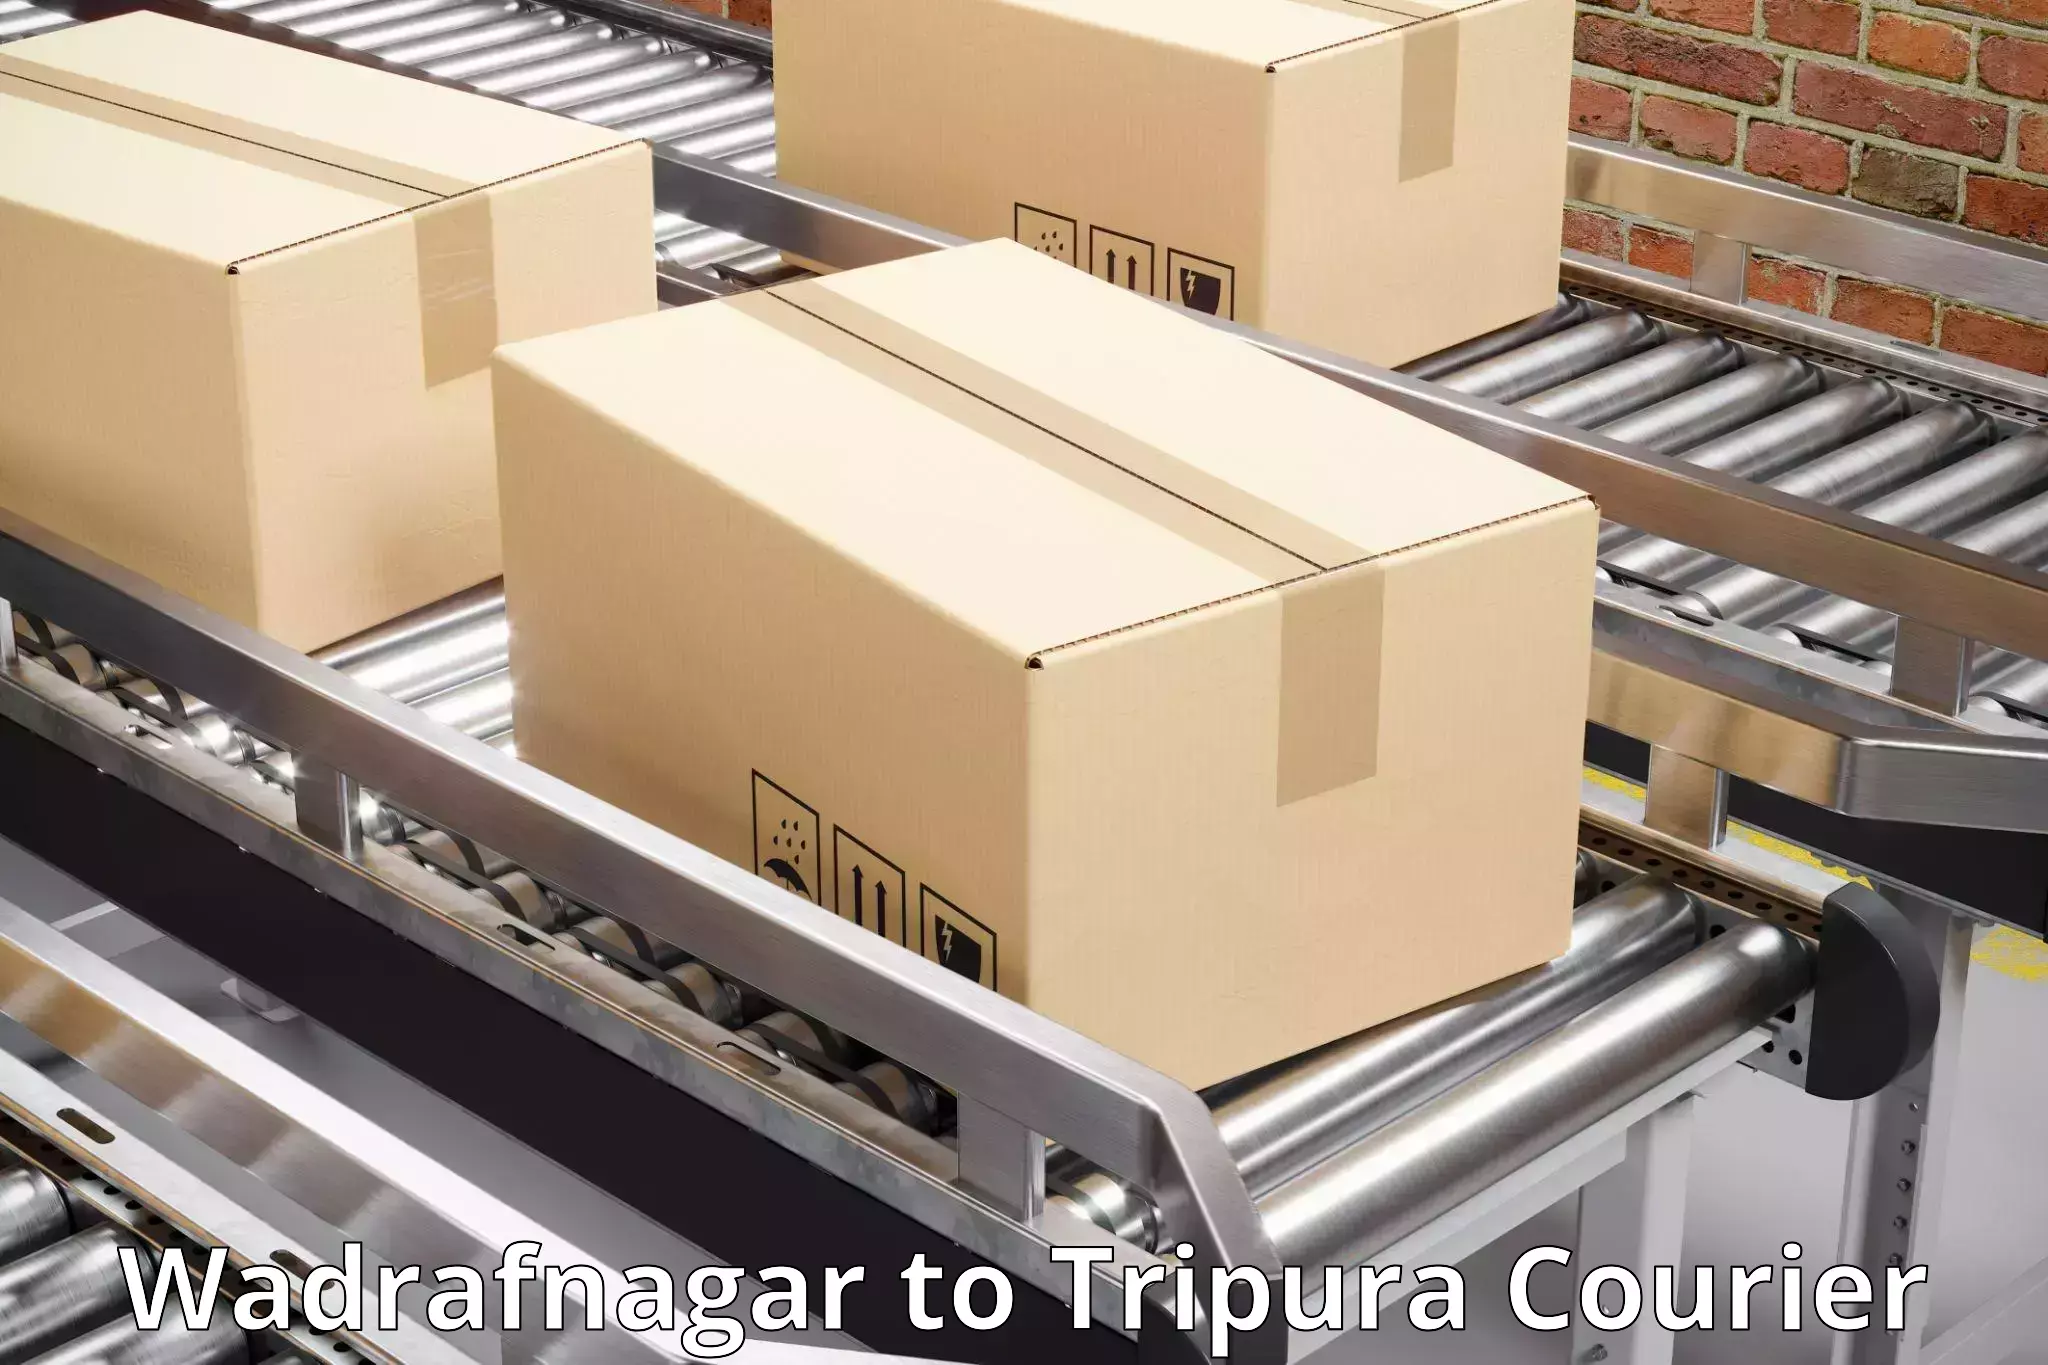 Efficient parcel transport Wadrafnagar to Tripura